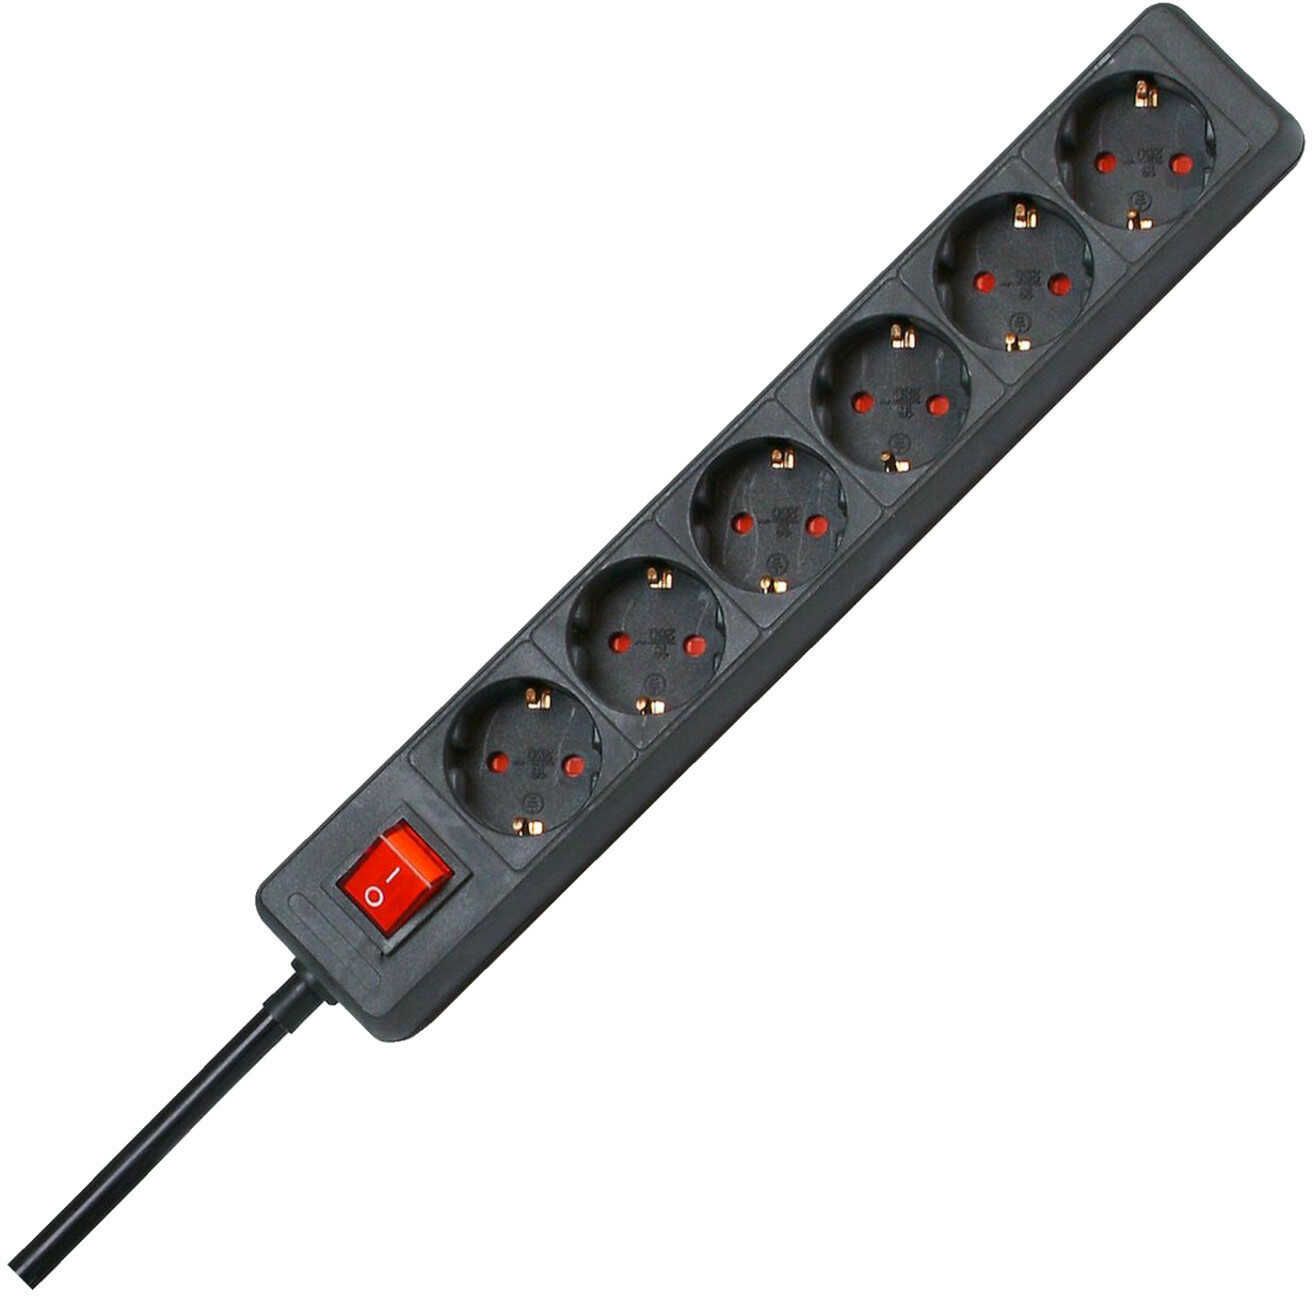 Kopp 120915006 6 fach Steckdosenleiste mit beleuchtetem Schalter Standard, schwarz 1 Stück für 7,99€ PVG 12,31€